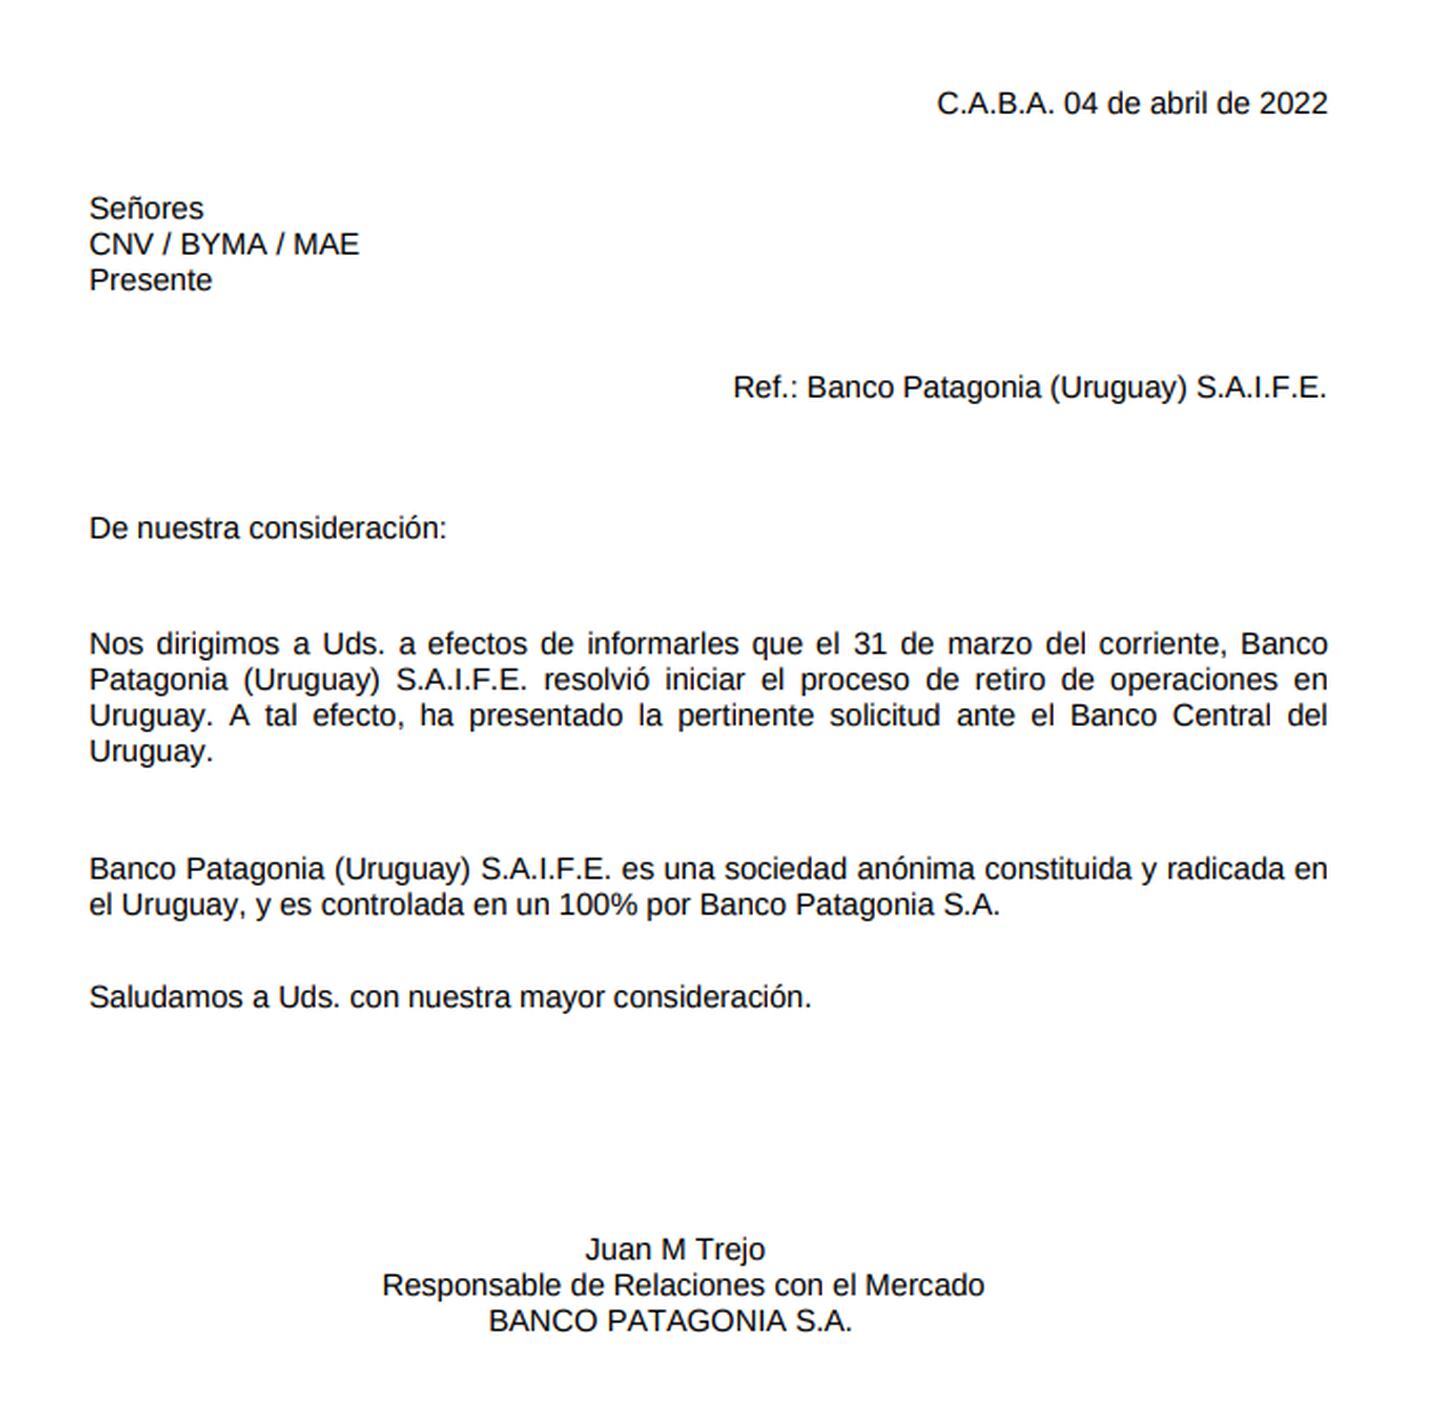 Días atrás, el Banco Patagonia (Uruguay) comunicó su retiro de operaciones en Uruguay.dfd